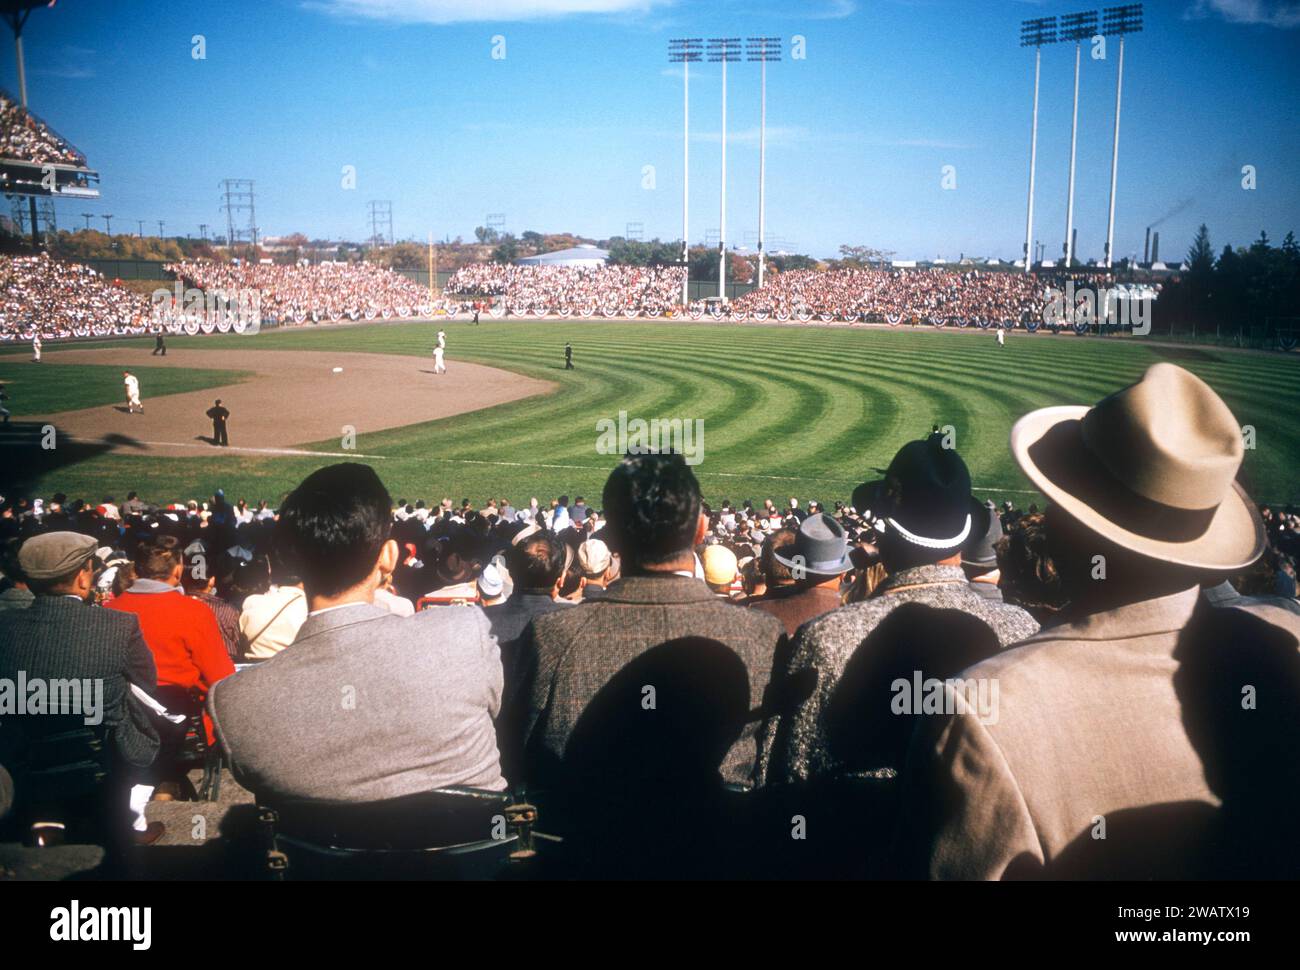 MILWAUKEE, WISCONSIN - OTTOBRE 1957: Vista generale mentre i tifosi guardano una partita durante le World Series 1957 con i New York Yankees e i Milwaukee Braves intorno all'ottobre 1957 al Milwaukee County Stadium di Milwaukee, Wisconsin. (Foto di Hy Peskin) Foto Stock